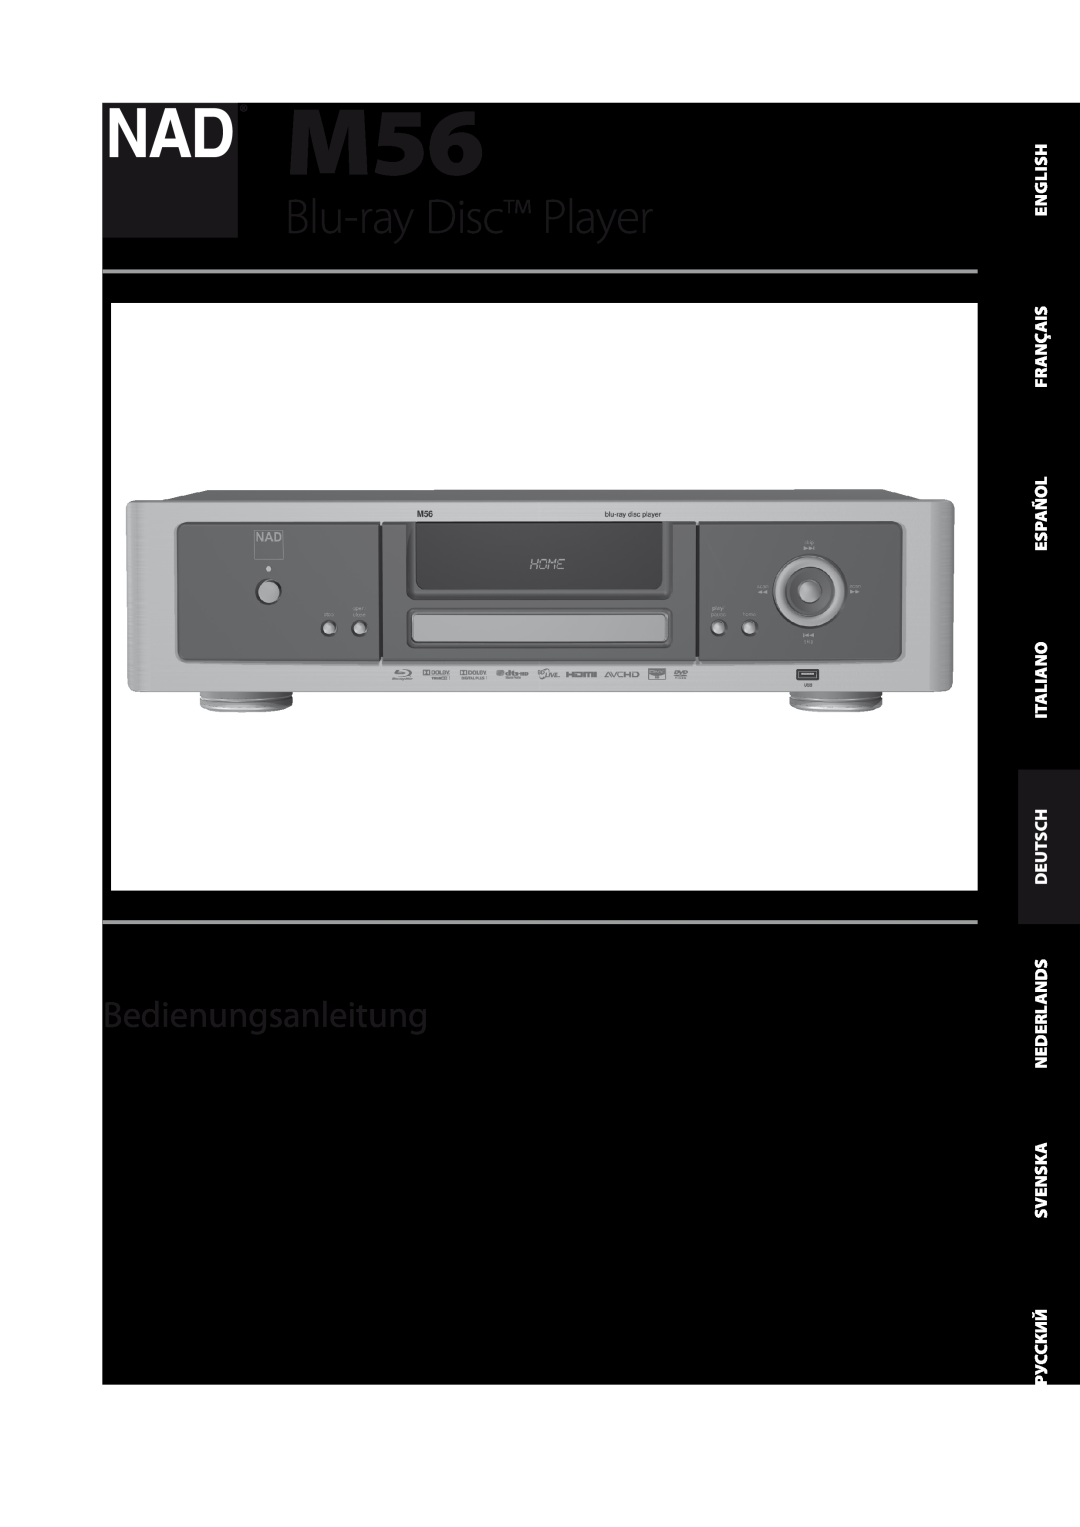 NAD M56 manual Deutsch, Blu-ray Disc Player, Bedienungsanleitung 